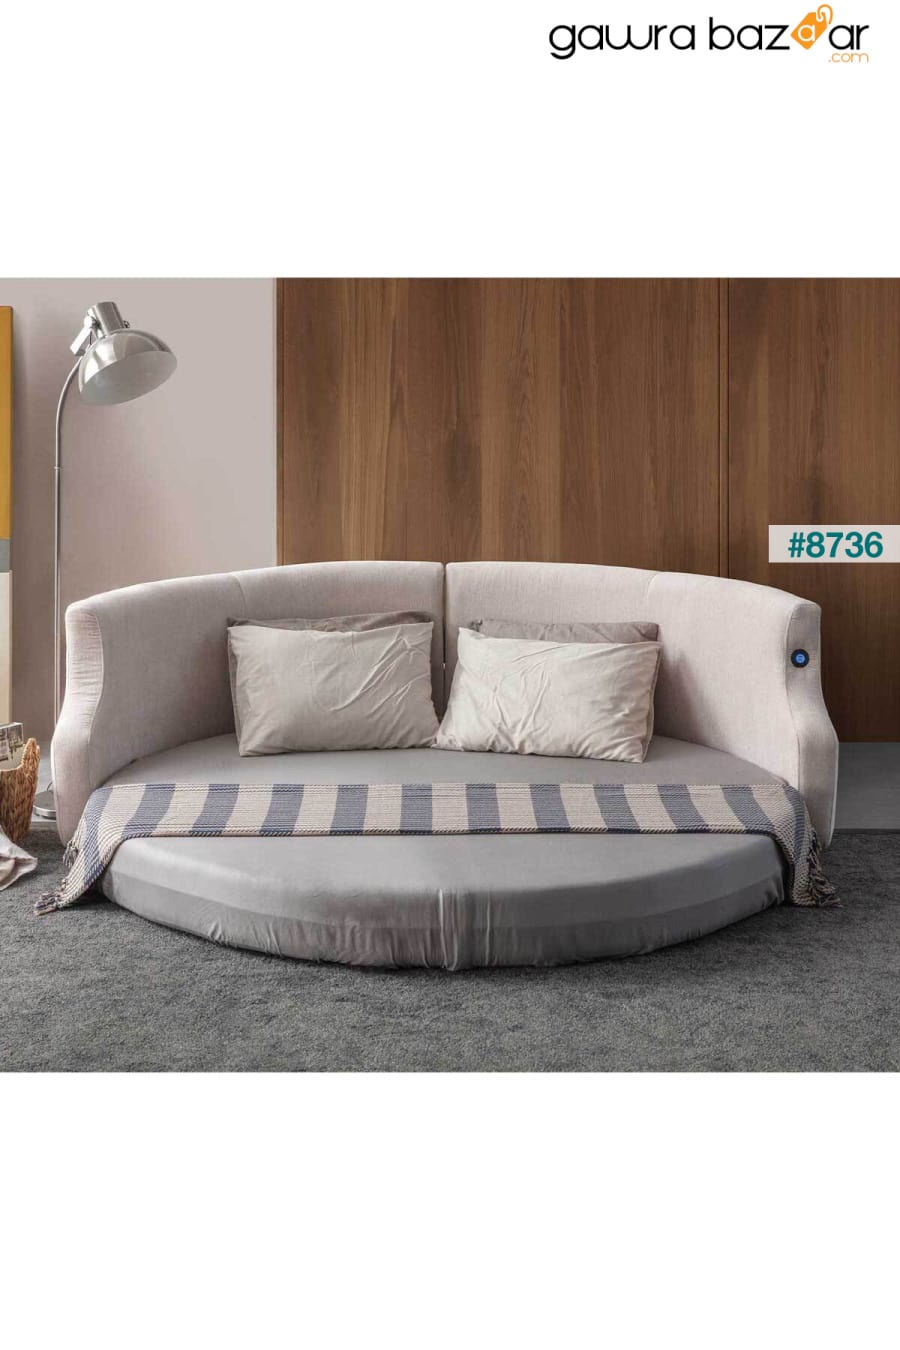 أريكة سرير مستديرة ذكية من Letto Vip Eymense 6